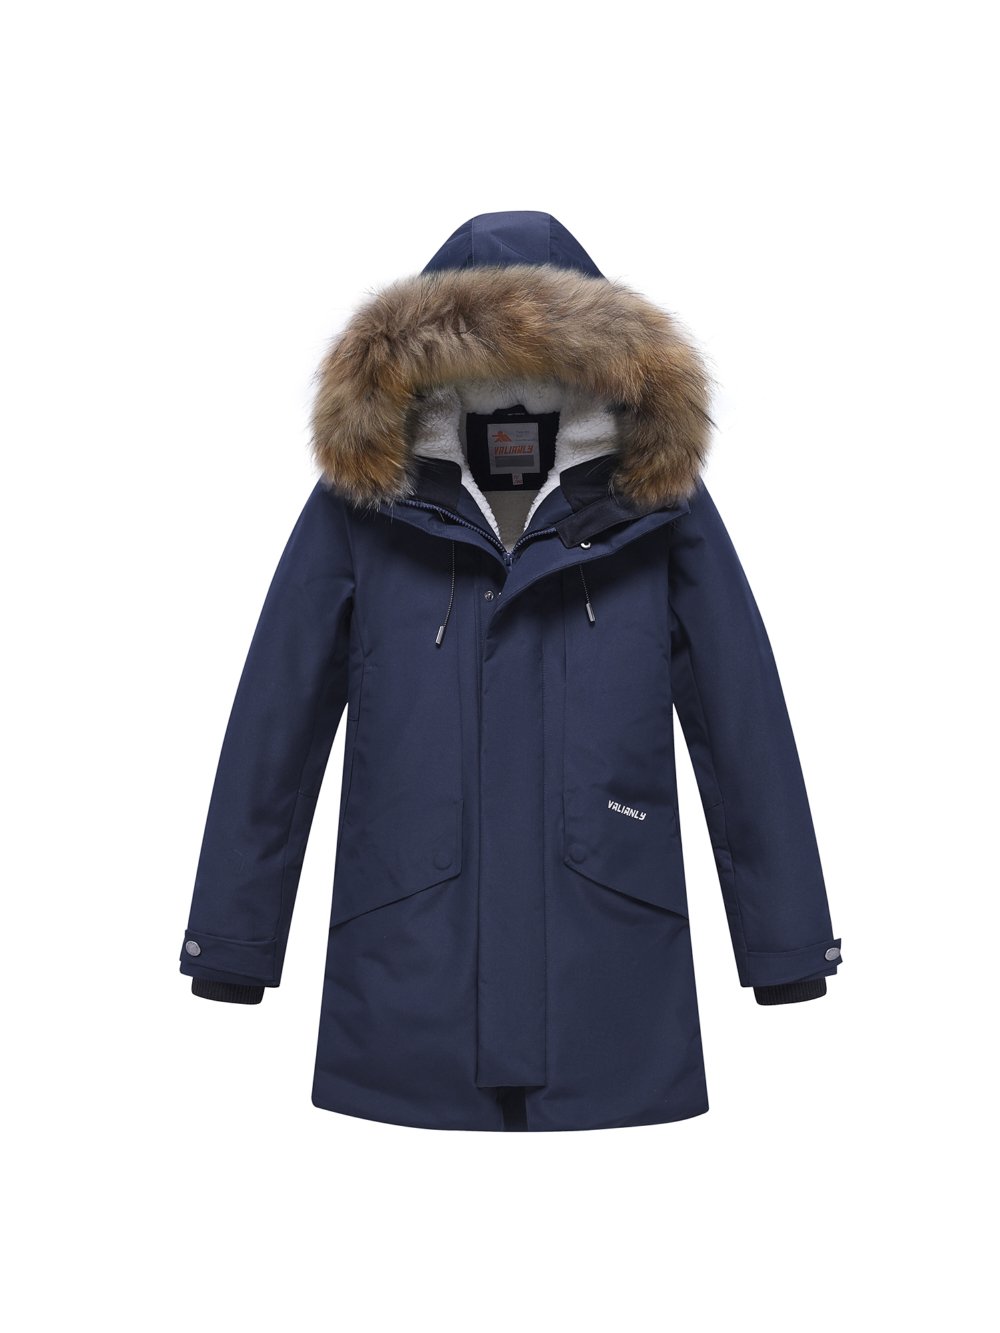 Купить куртку парку для мальчика оптом от производителя недорого в Москве 9343TS 1